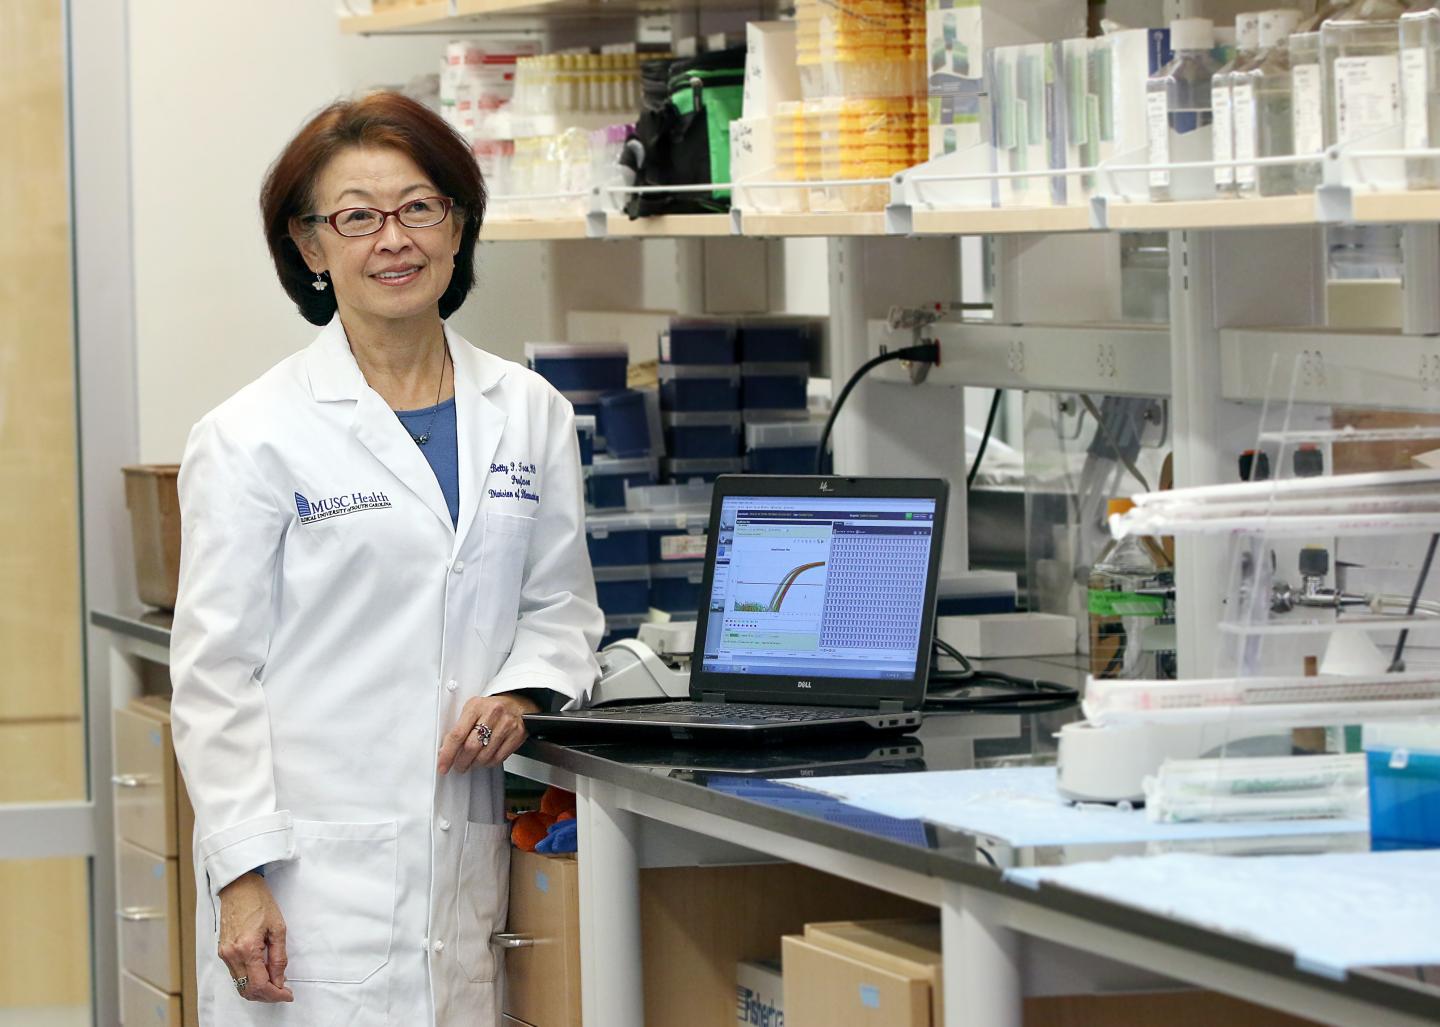 Betty Pei-tie Tsao, Ph.D., Medical University of South Carolina